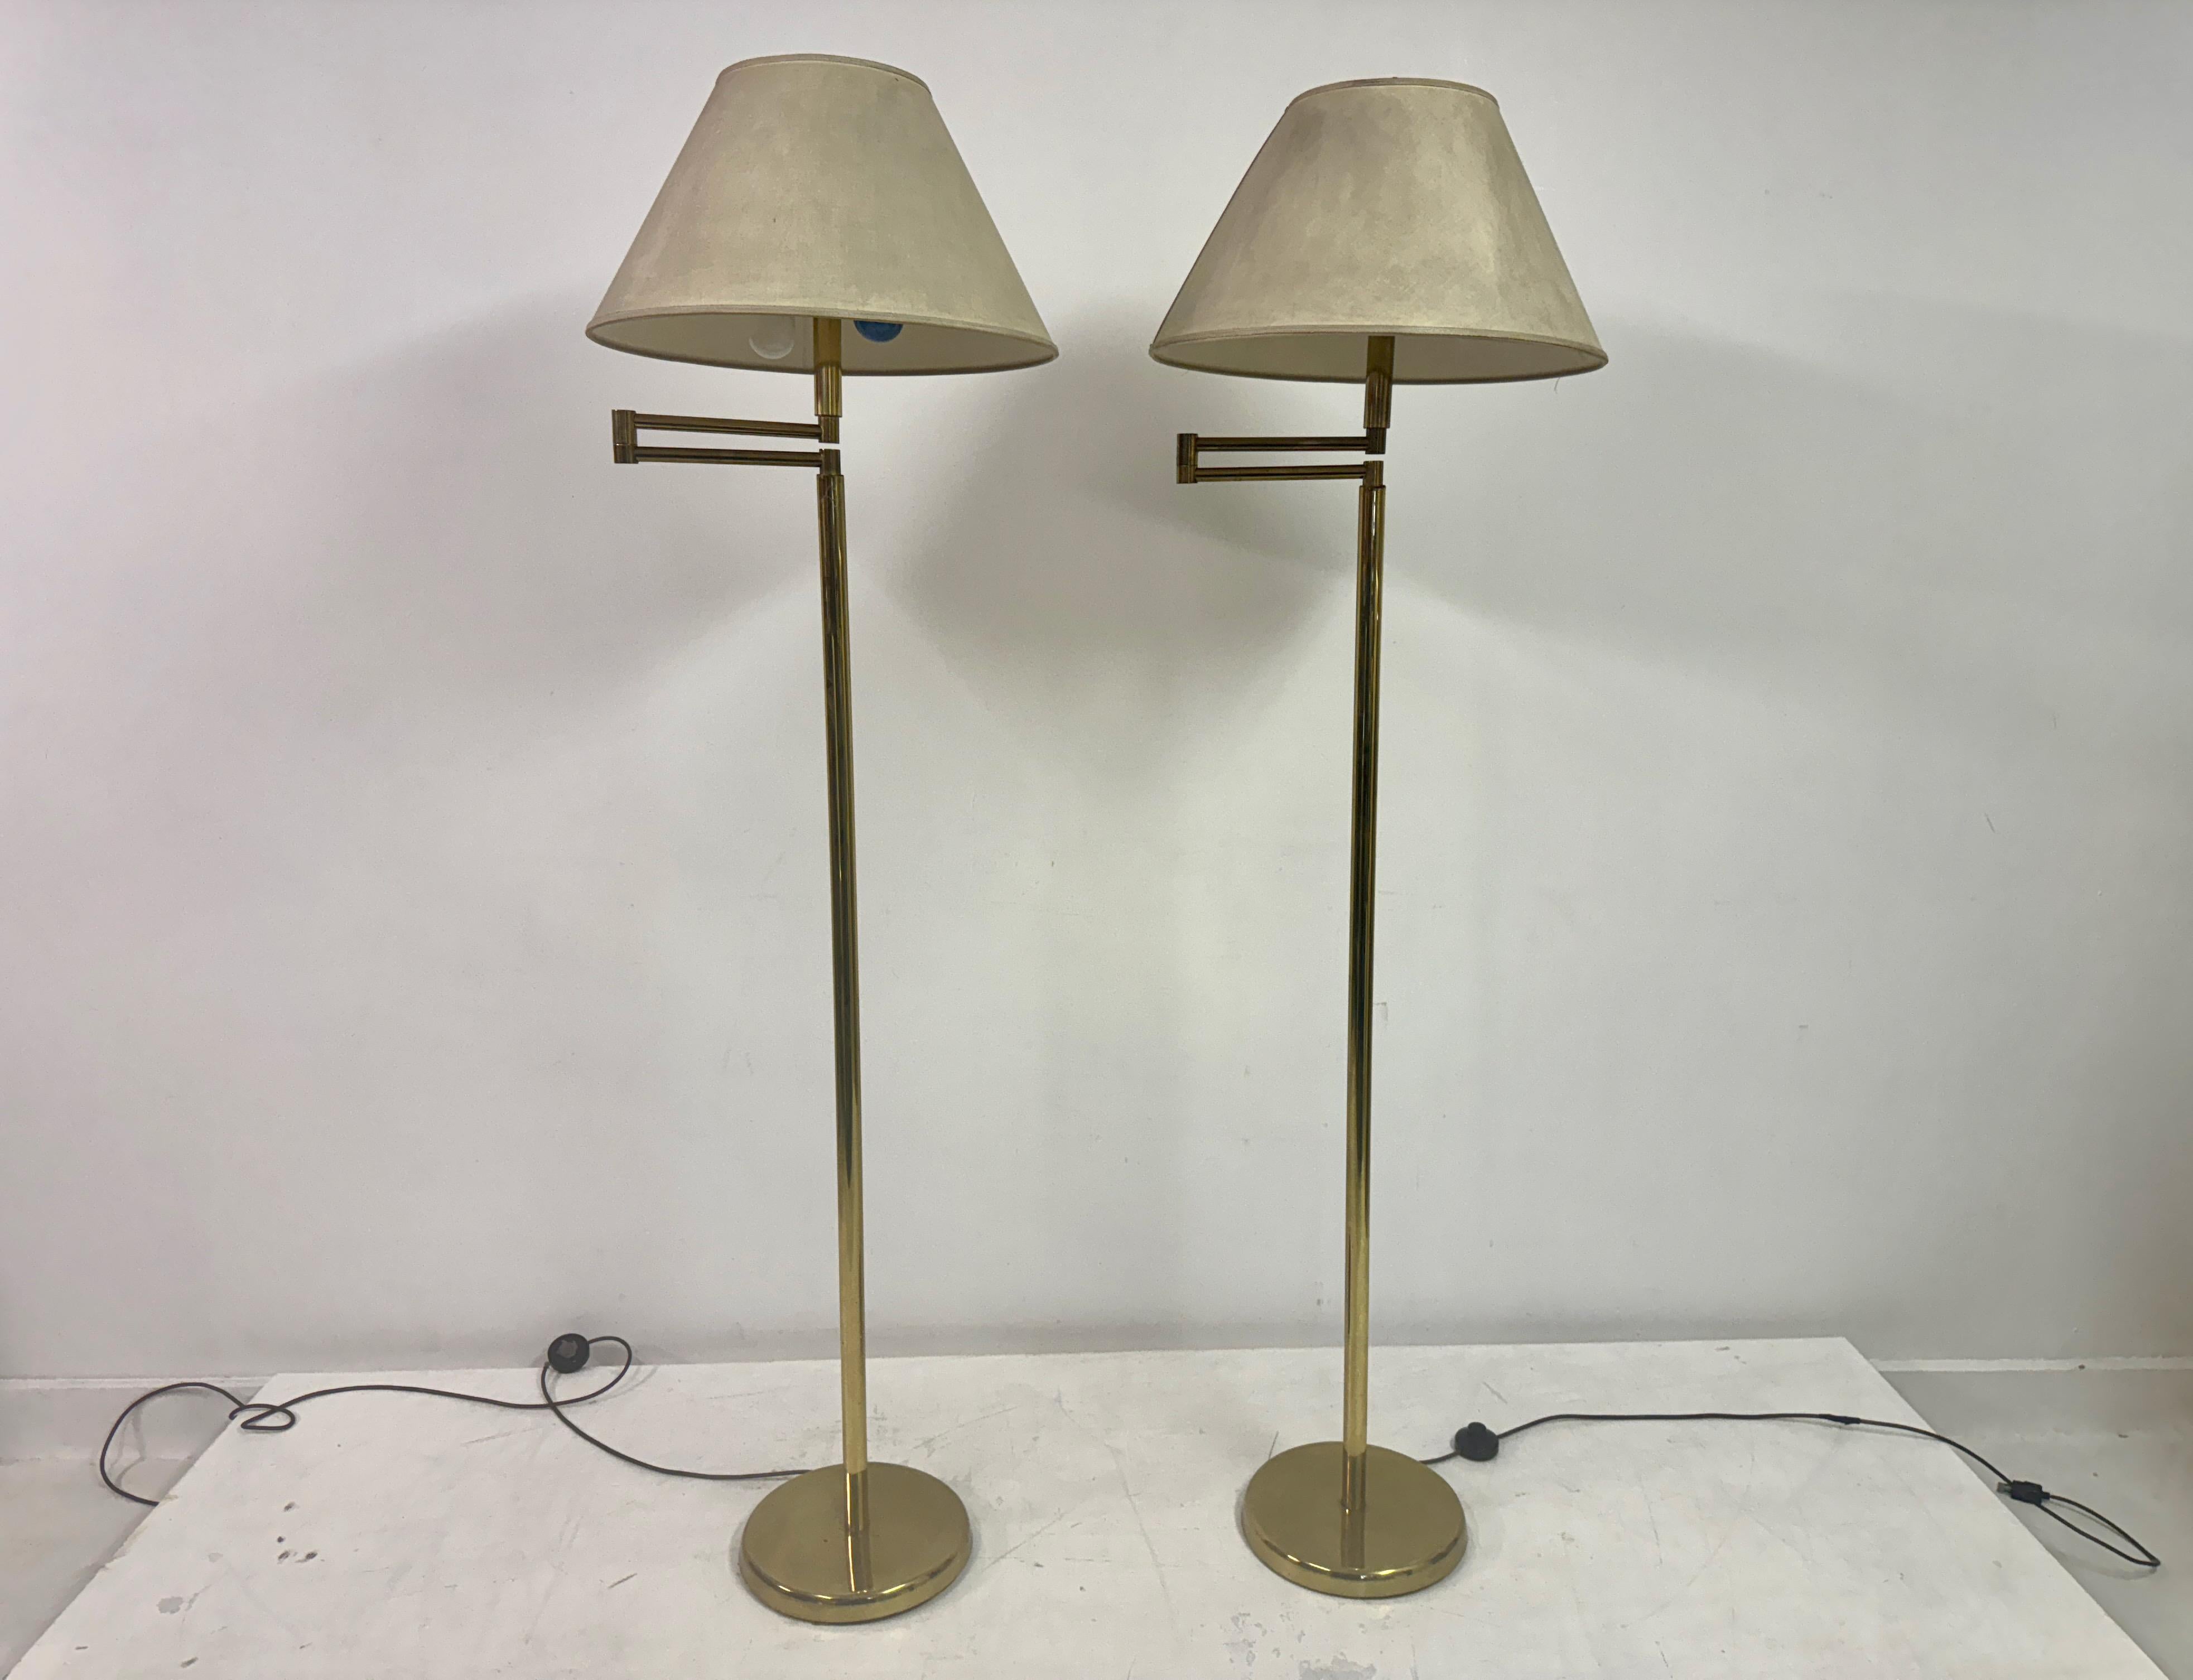 Paire de lampadaires

Bras oscillants

Laiton

Teintes originales mais salies

Dimensions sans abat-jour

Italie 1970